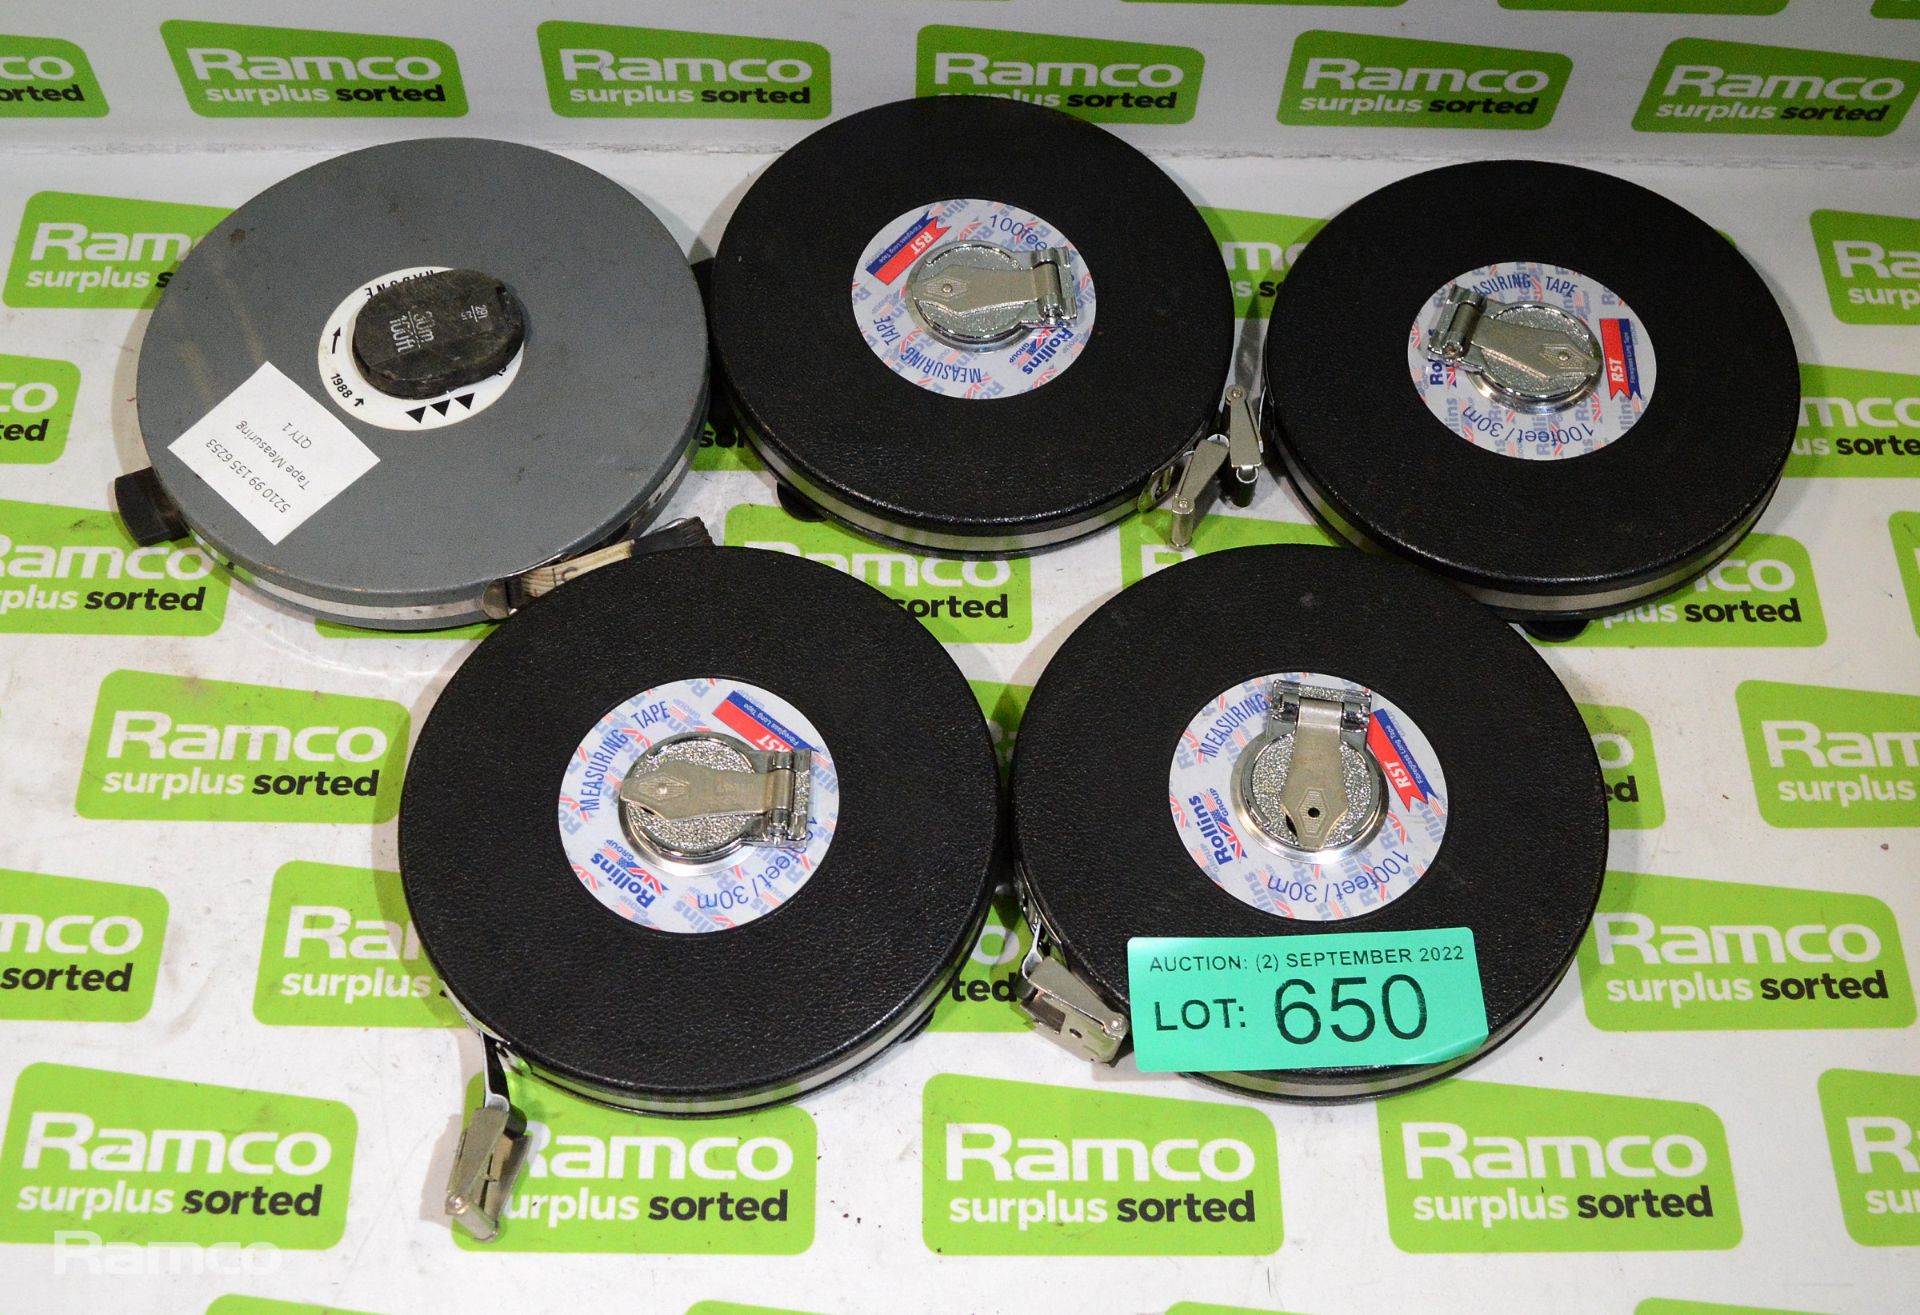 5x 30m tape measure - various inc Rabone